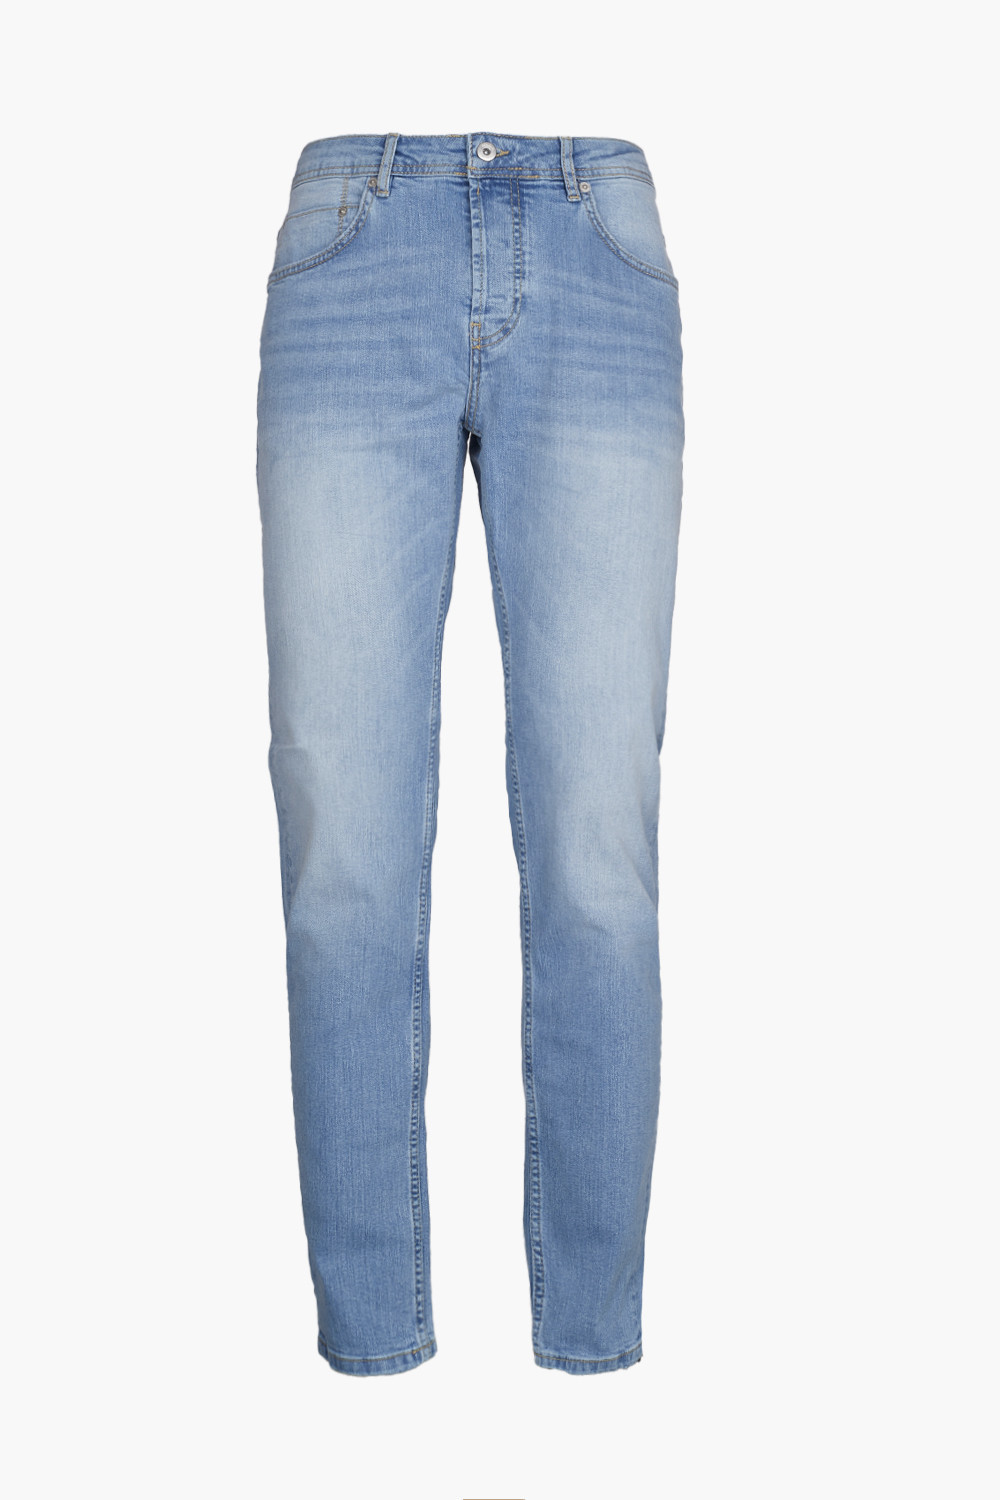 Jeans 5 tasche slim fit lavaggio chiaro